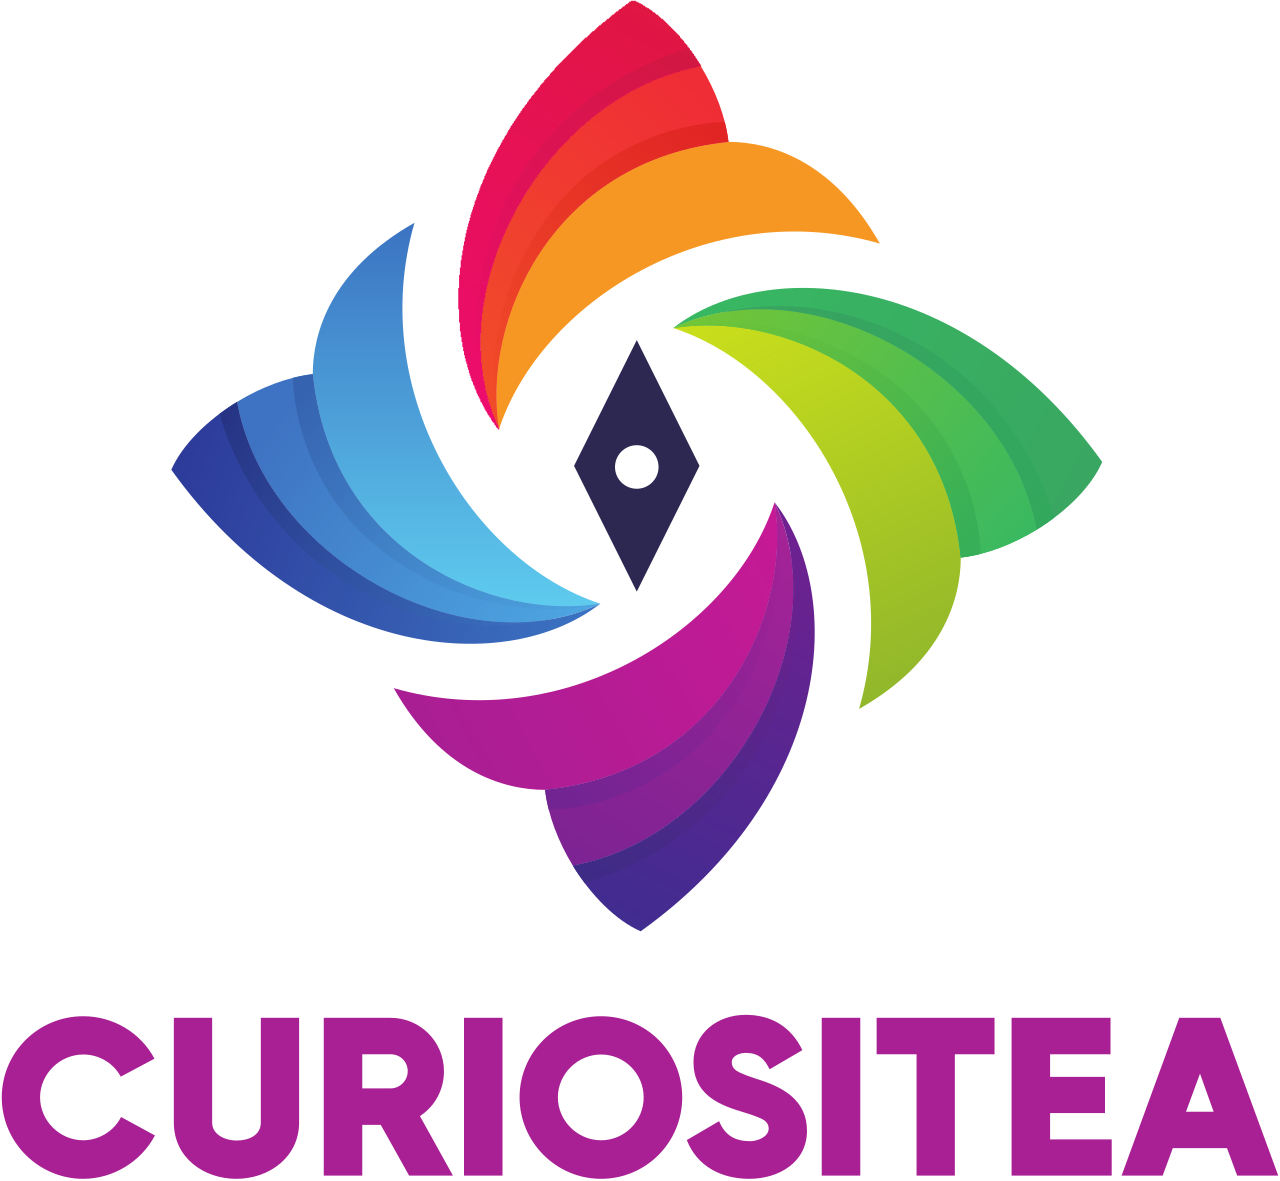 CURIOSItEA's web page